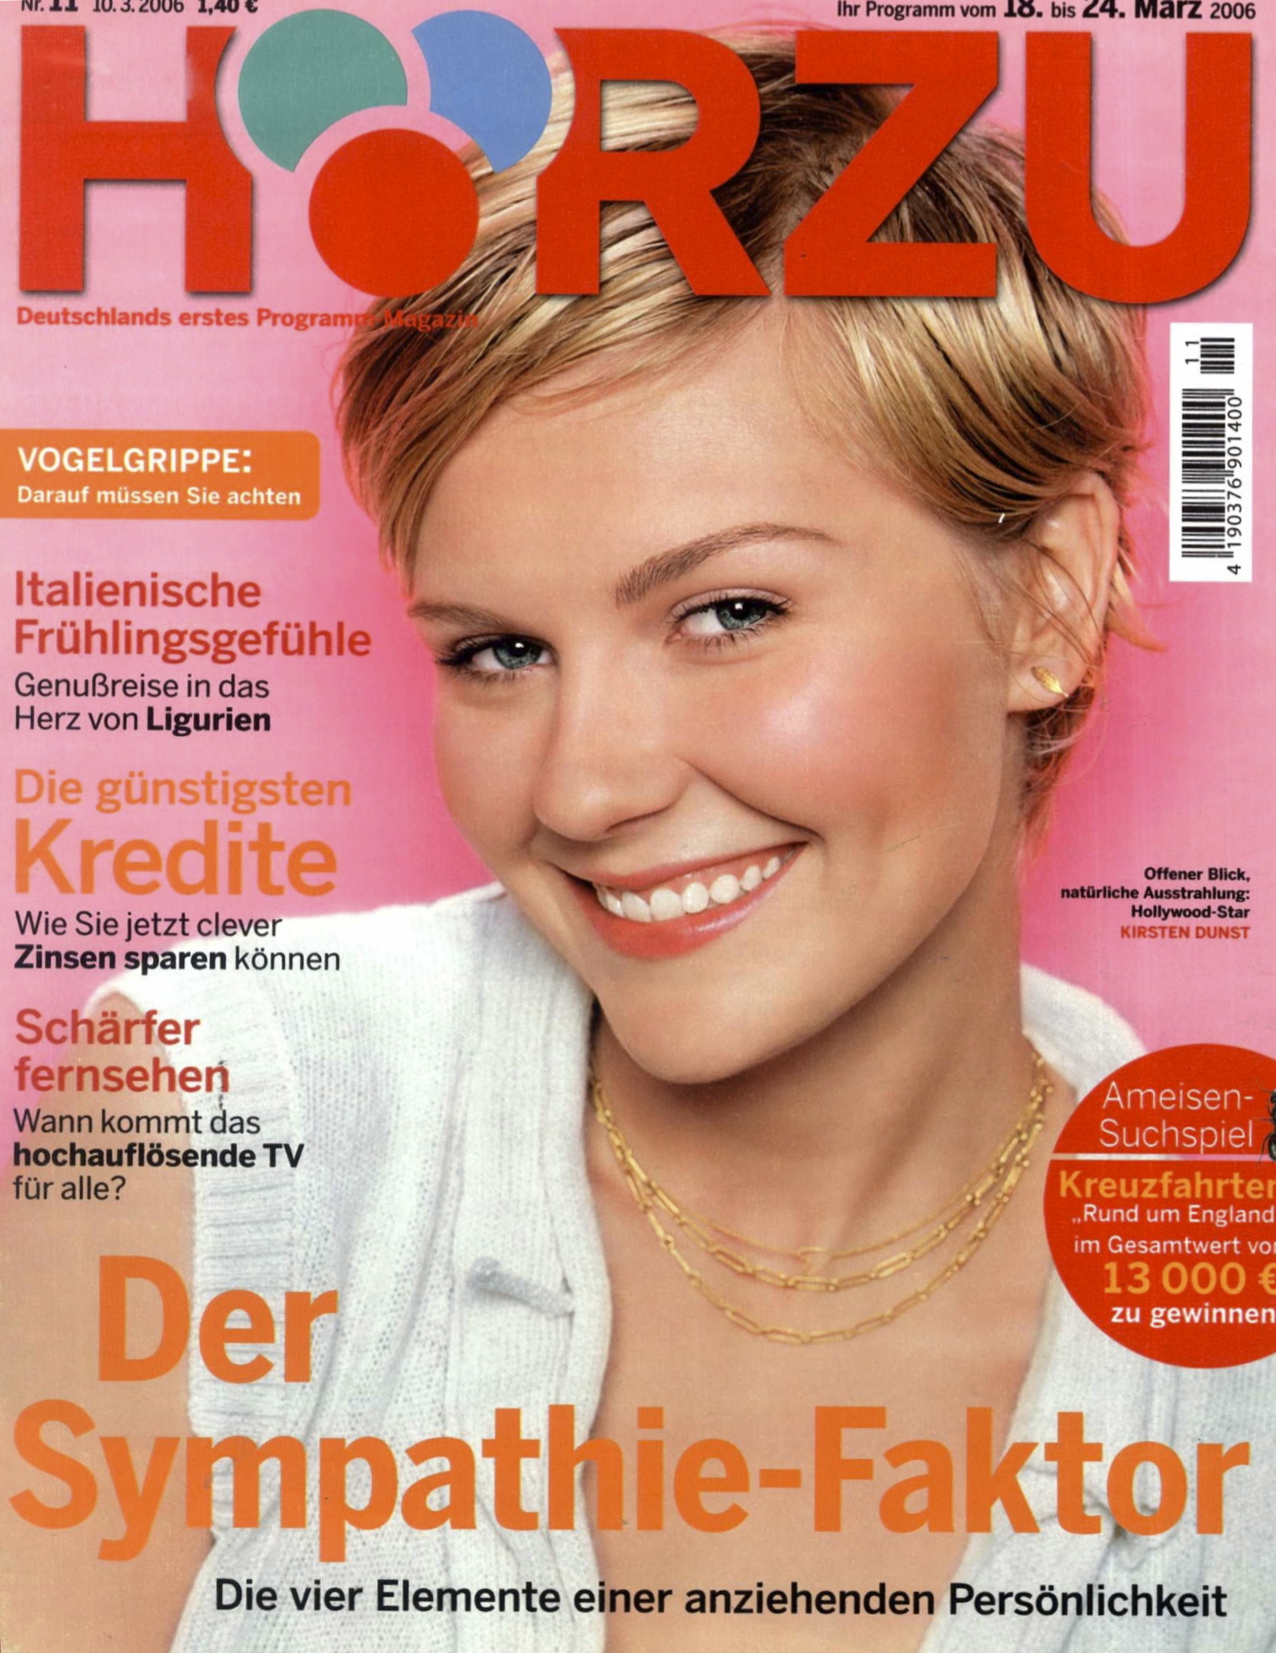 HZ_10.3.2006_Cover.jpg